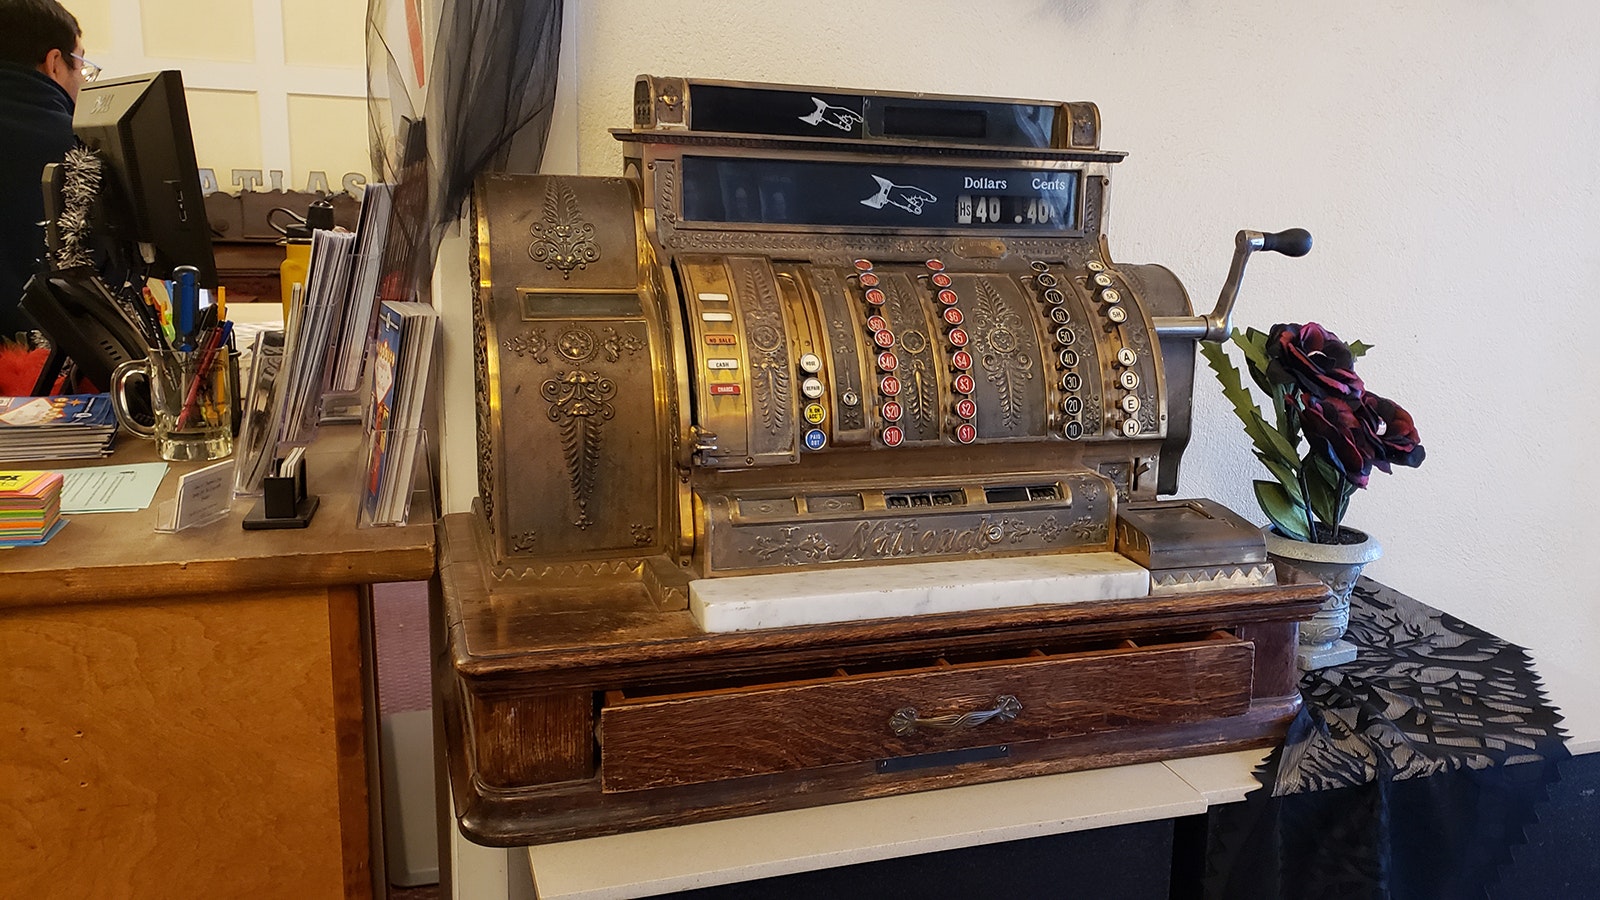 A vintage cash register at the Atlas Theatre.